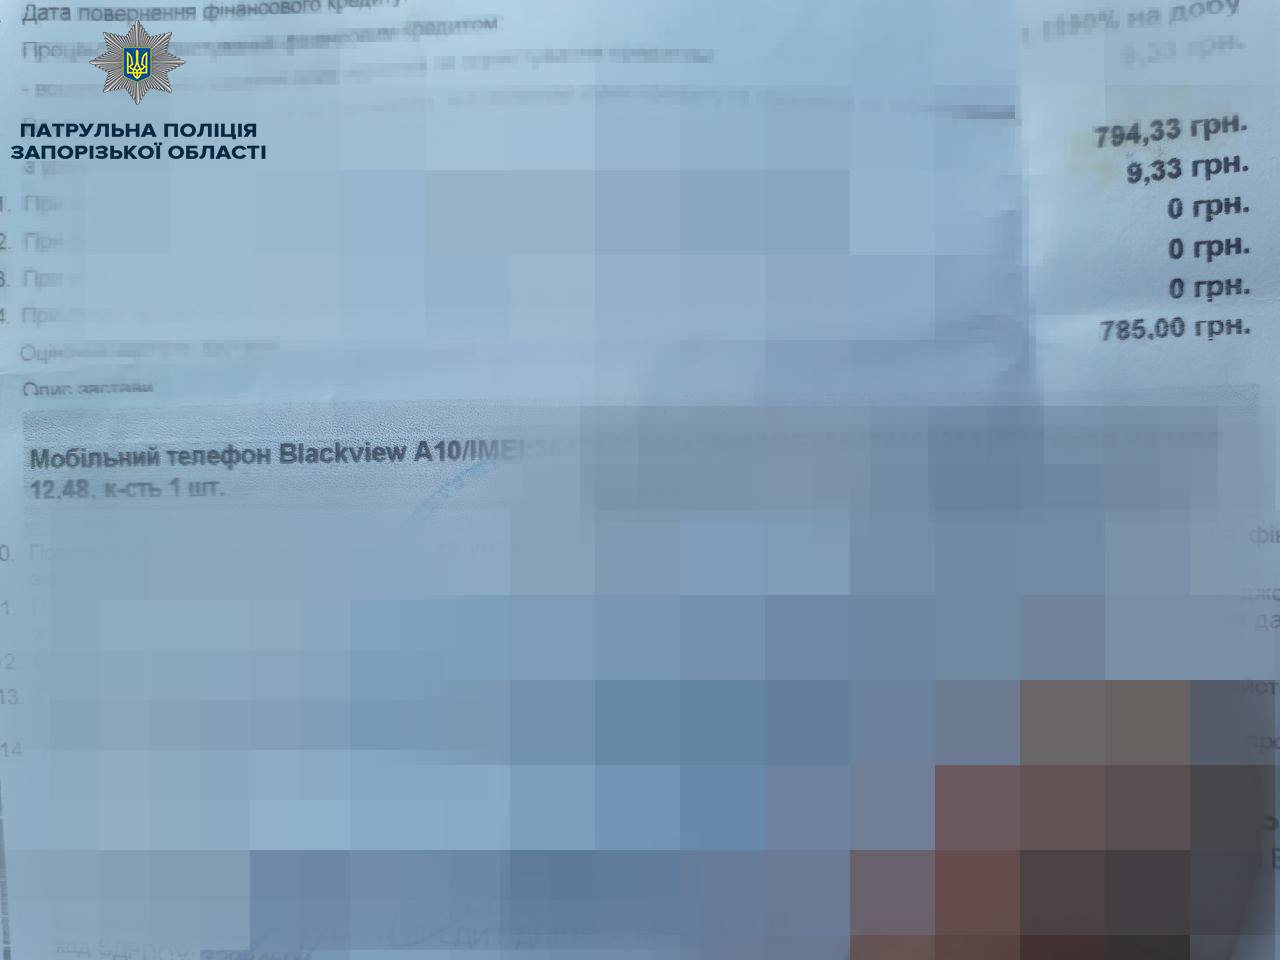 В Запорожье в детскую поликлинику вызвали полицию: появились подробности и ФОТО